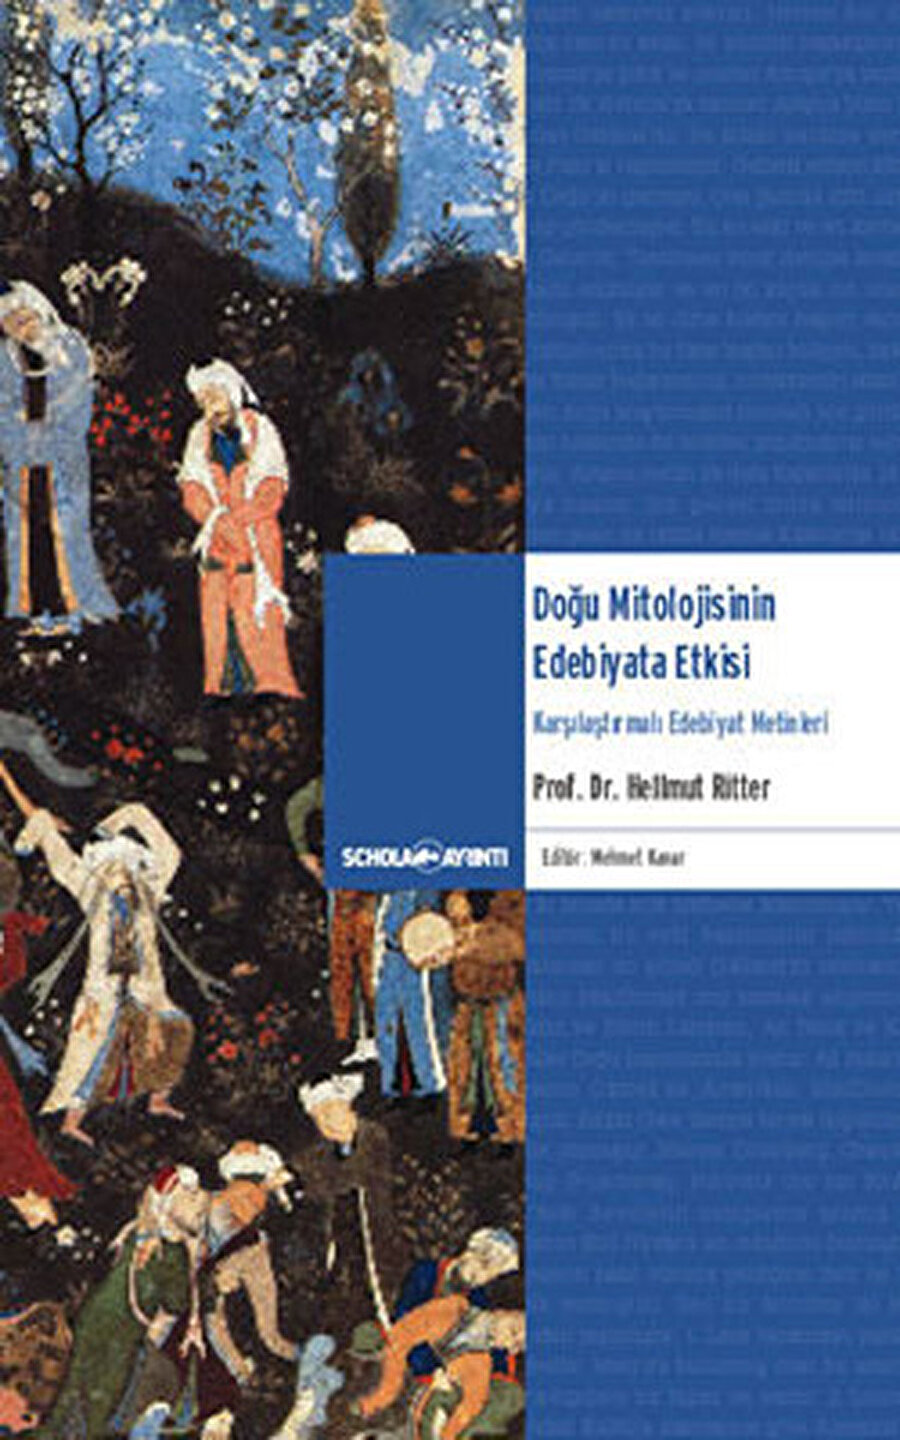 Doğu Mitolojisinin Edebiyata Etkisi, Helmutt Ritter, ed. Mehmet Kanar, Ayrıntı, 2011